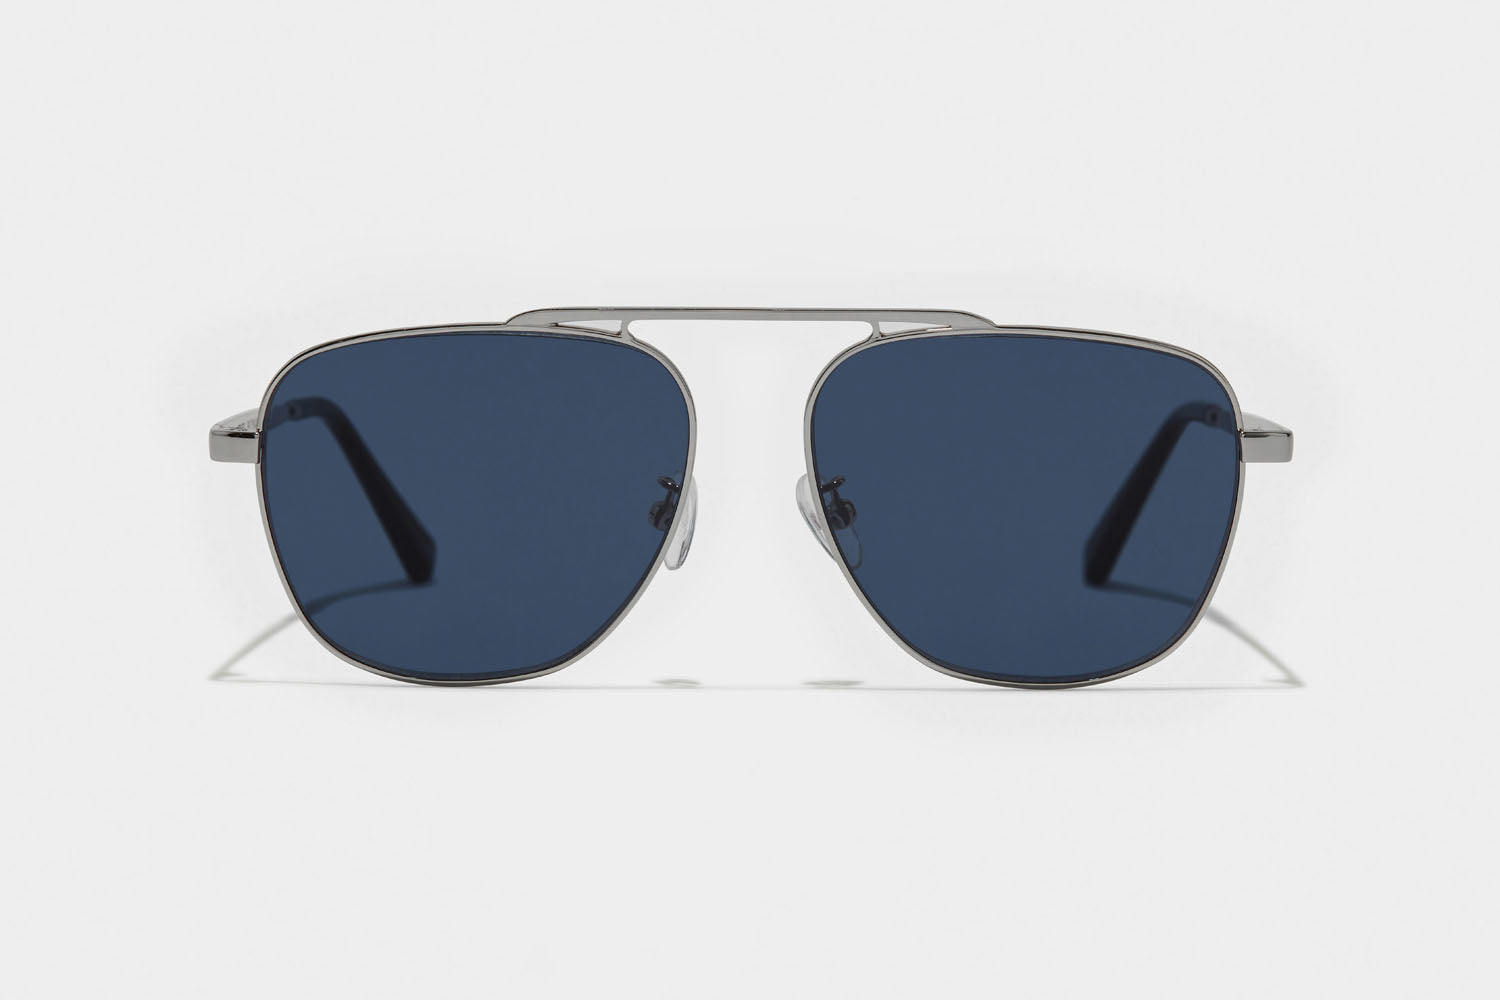 www.enkieyewear.com Teles Men’s and Women’s Sunglasses